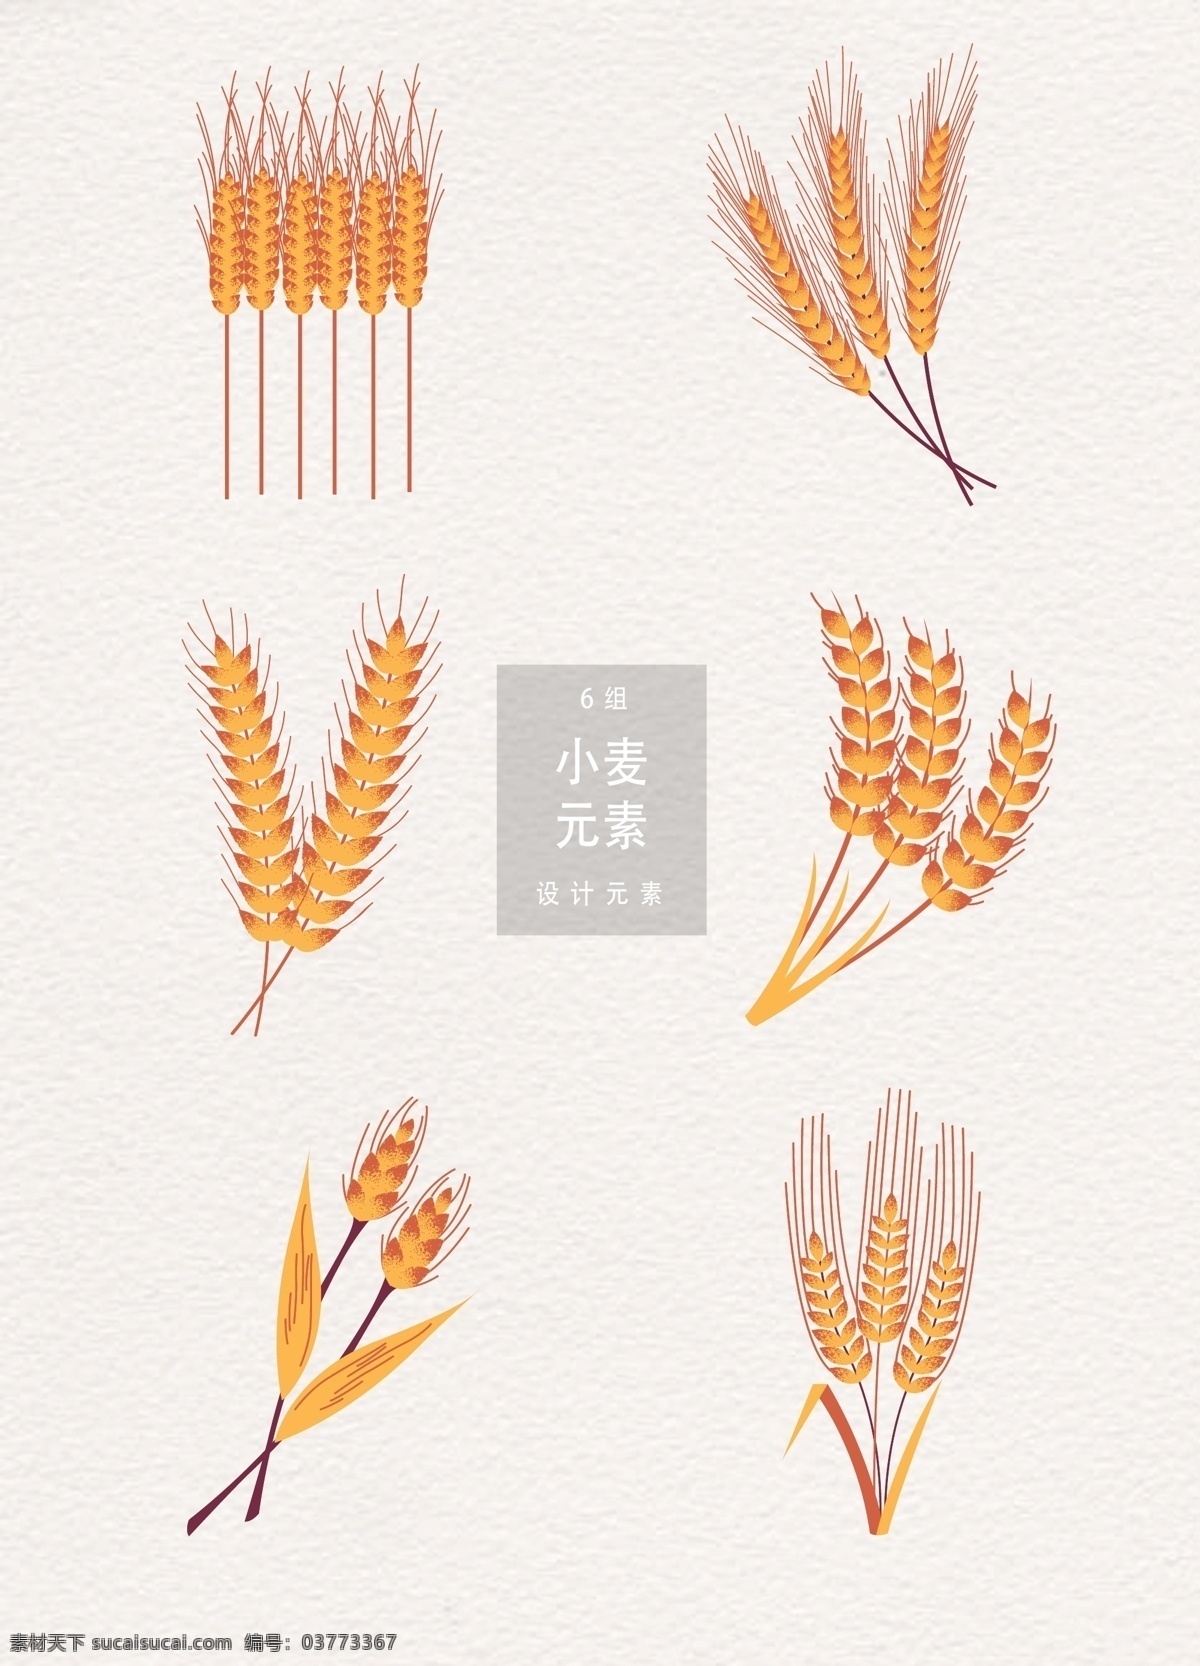 小麦 矢量 设计元素 植物 麦穗 五谷 小满 二十四节气 传统节气 谷物 麦子 ai素材